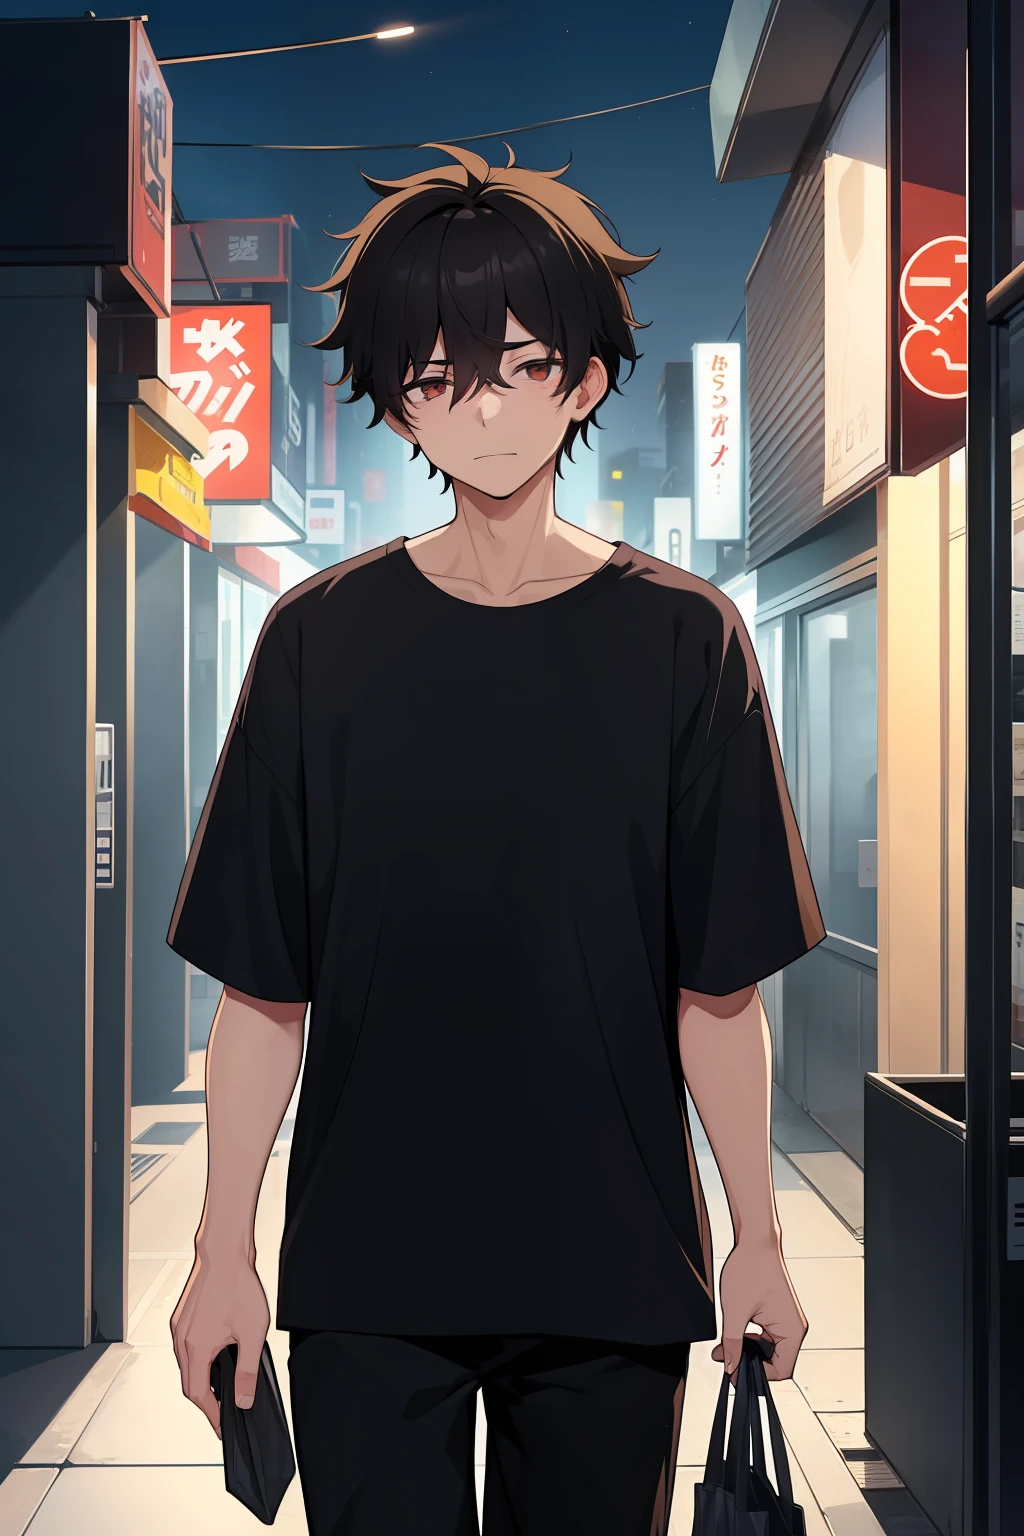 один мужчина, возраст 20, перегружен работой, грязные черные волосы, черная рубашка, носить с собой сумку из магазина, прогулка по уединенному городскому району ночью